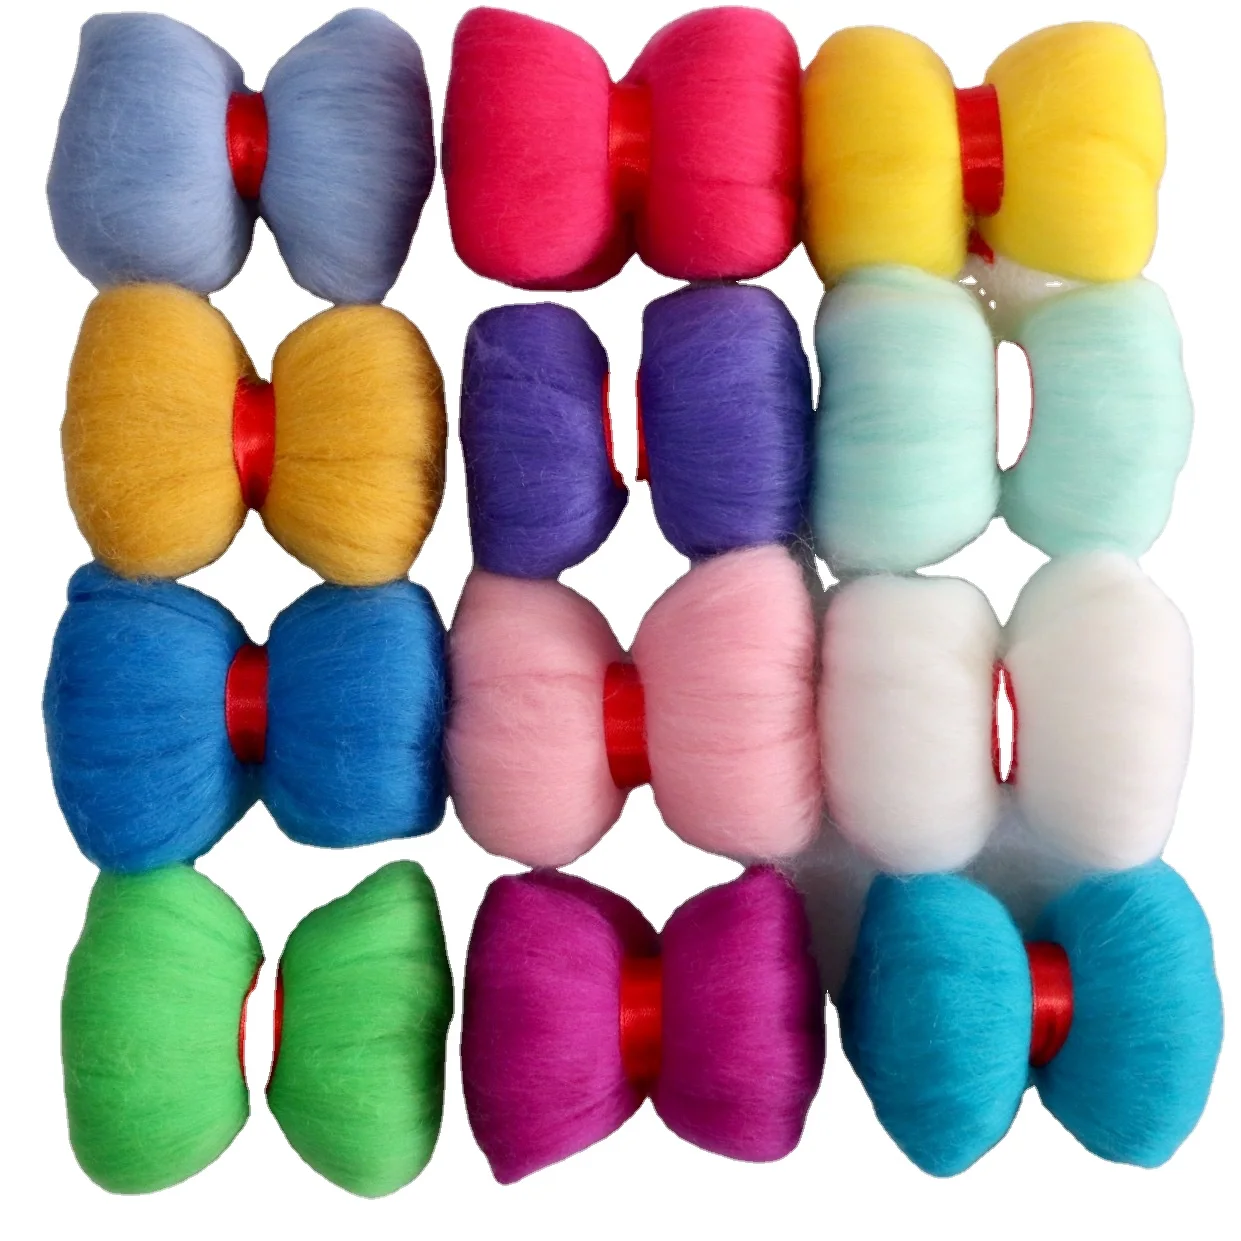 66S long fiber MERINO WOOL hundred colors multicolor Wool yarn 3 grams one bag fly tying wool fur